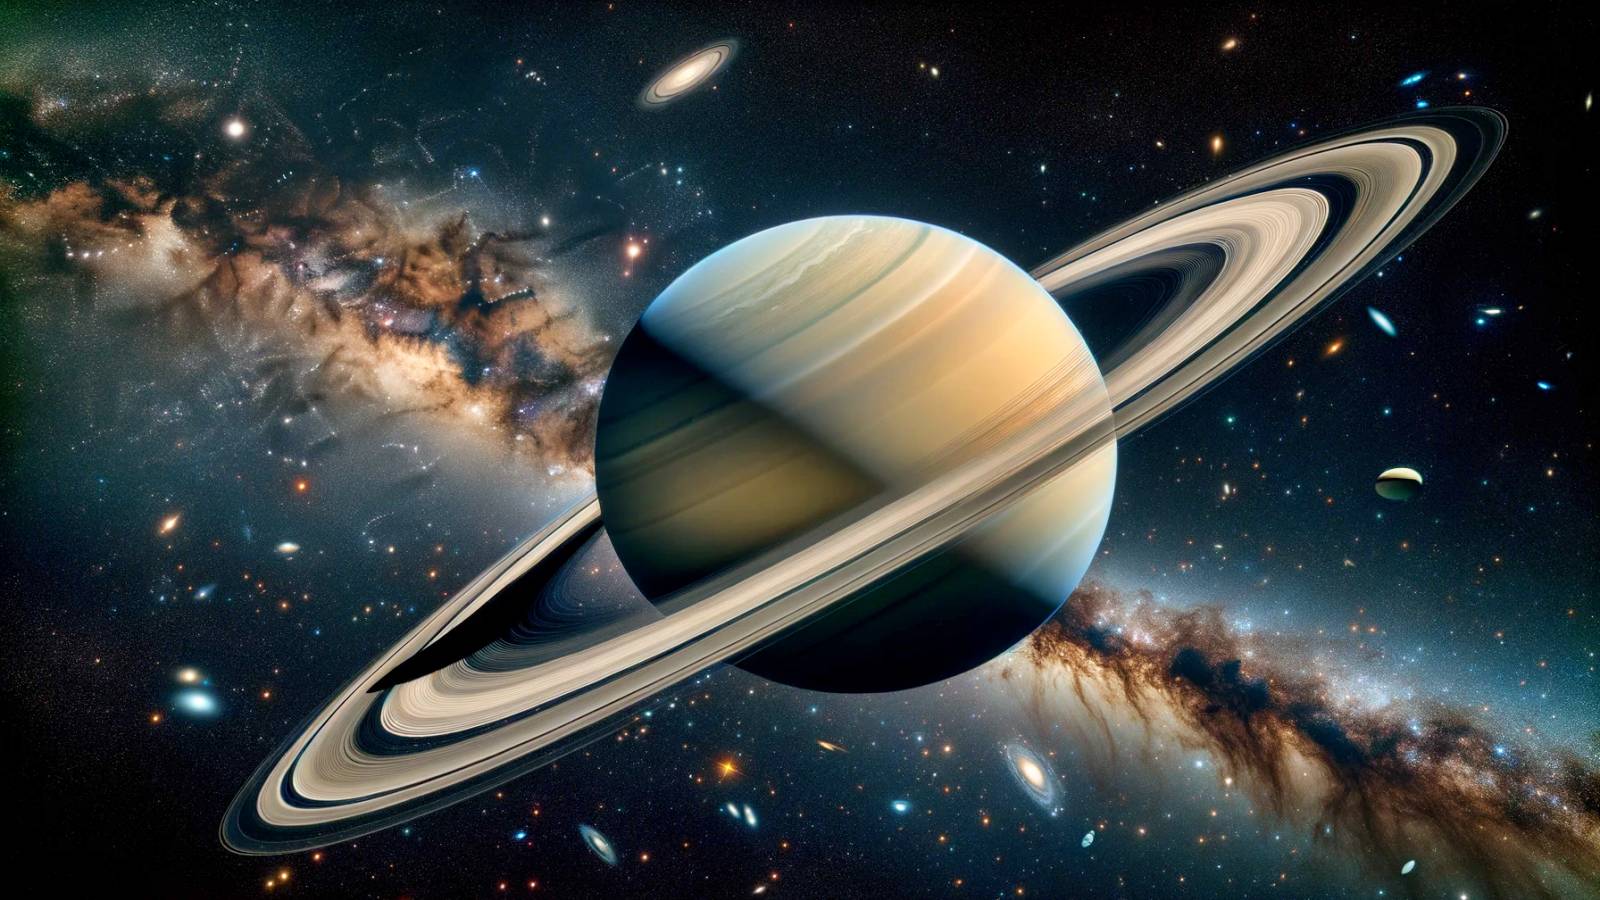 Planeet Saturnus NASA kondigt verbazingwekkende ontdekkingsfragmenten van Hubble-ringen aan